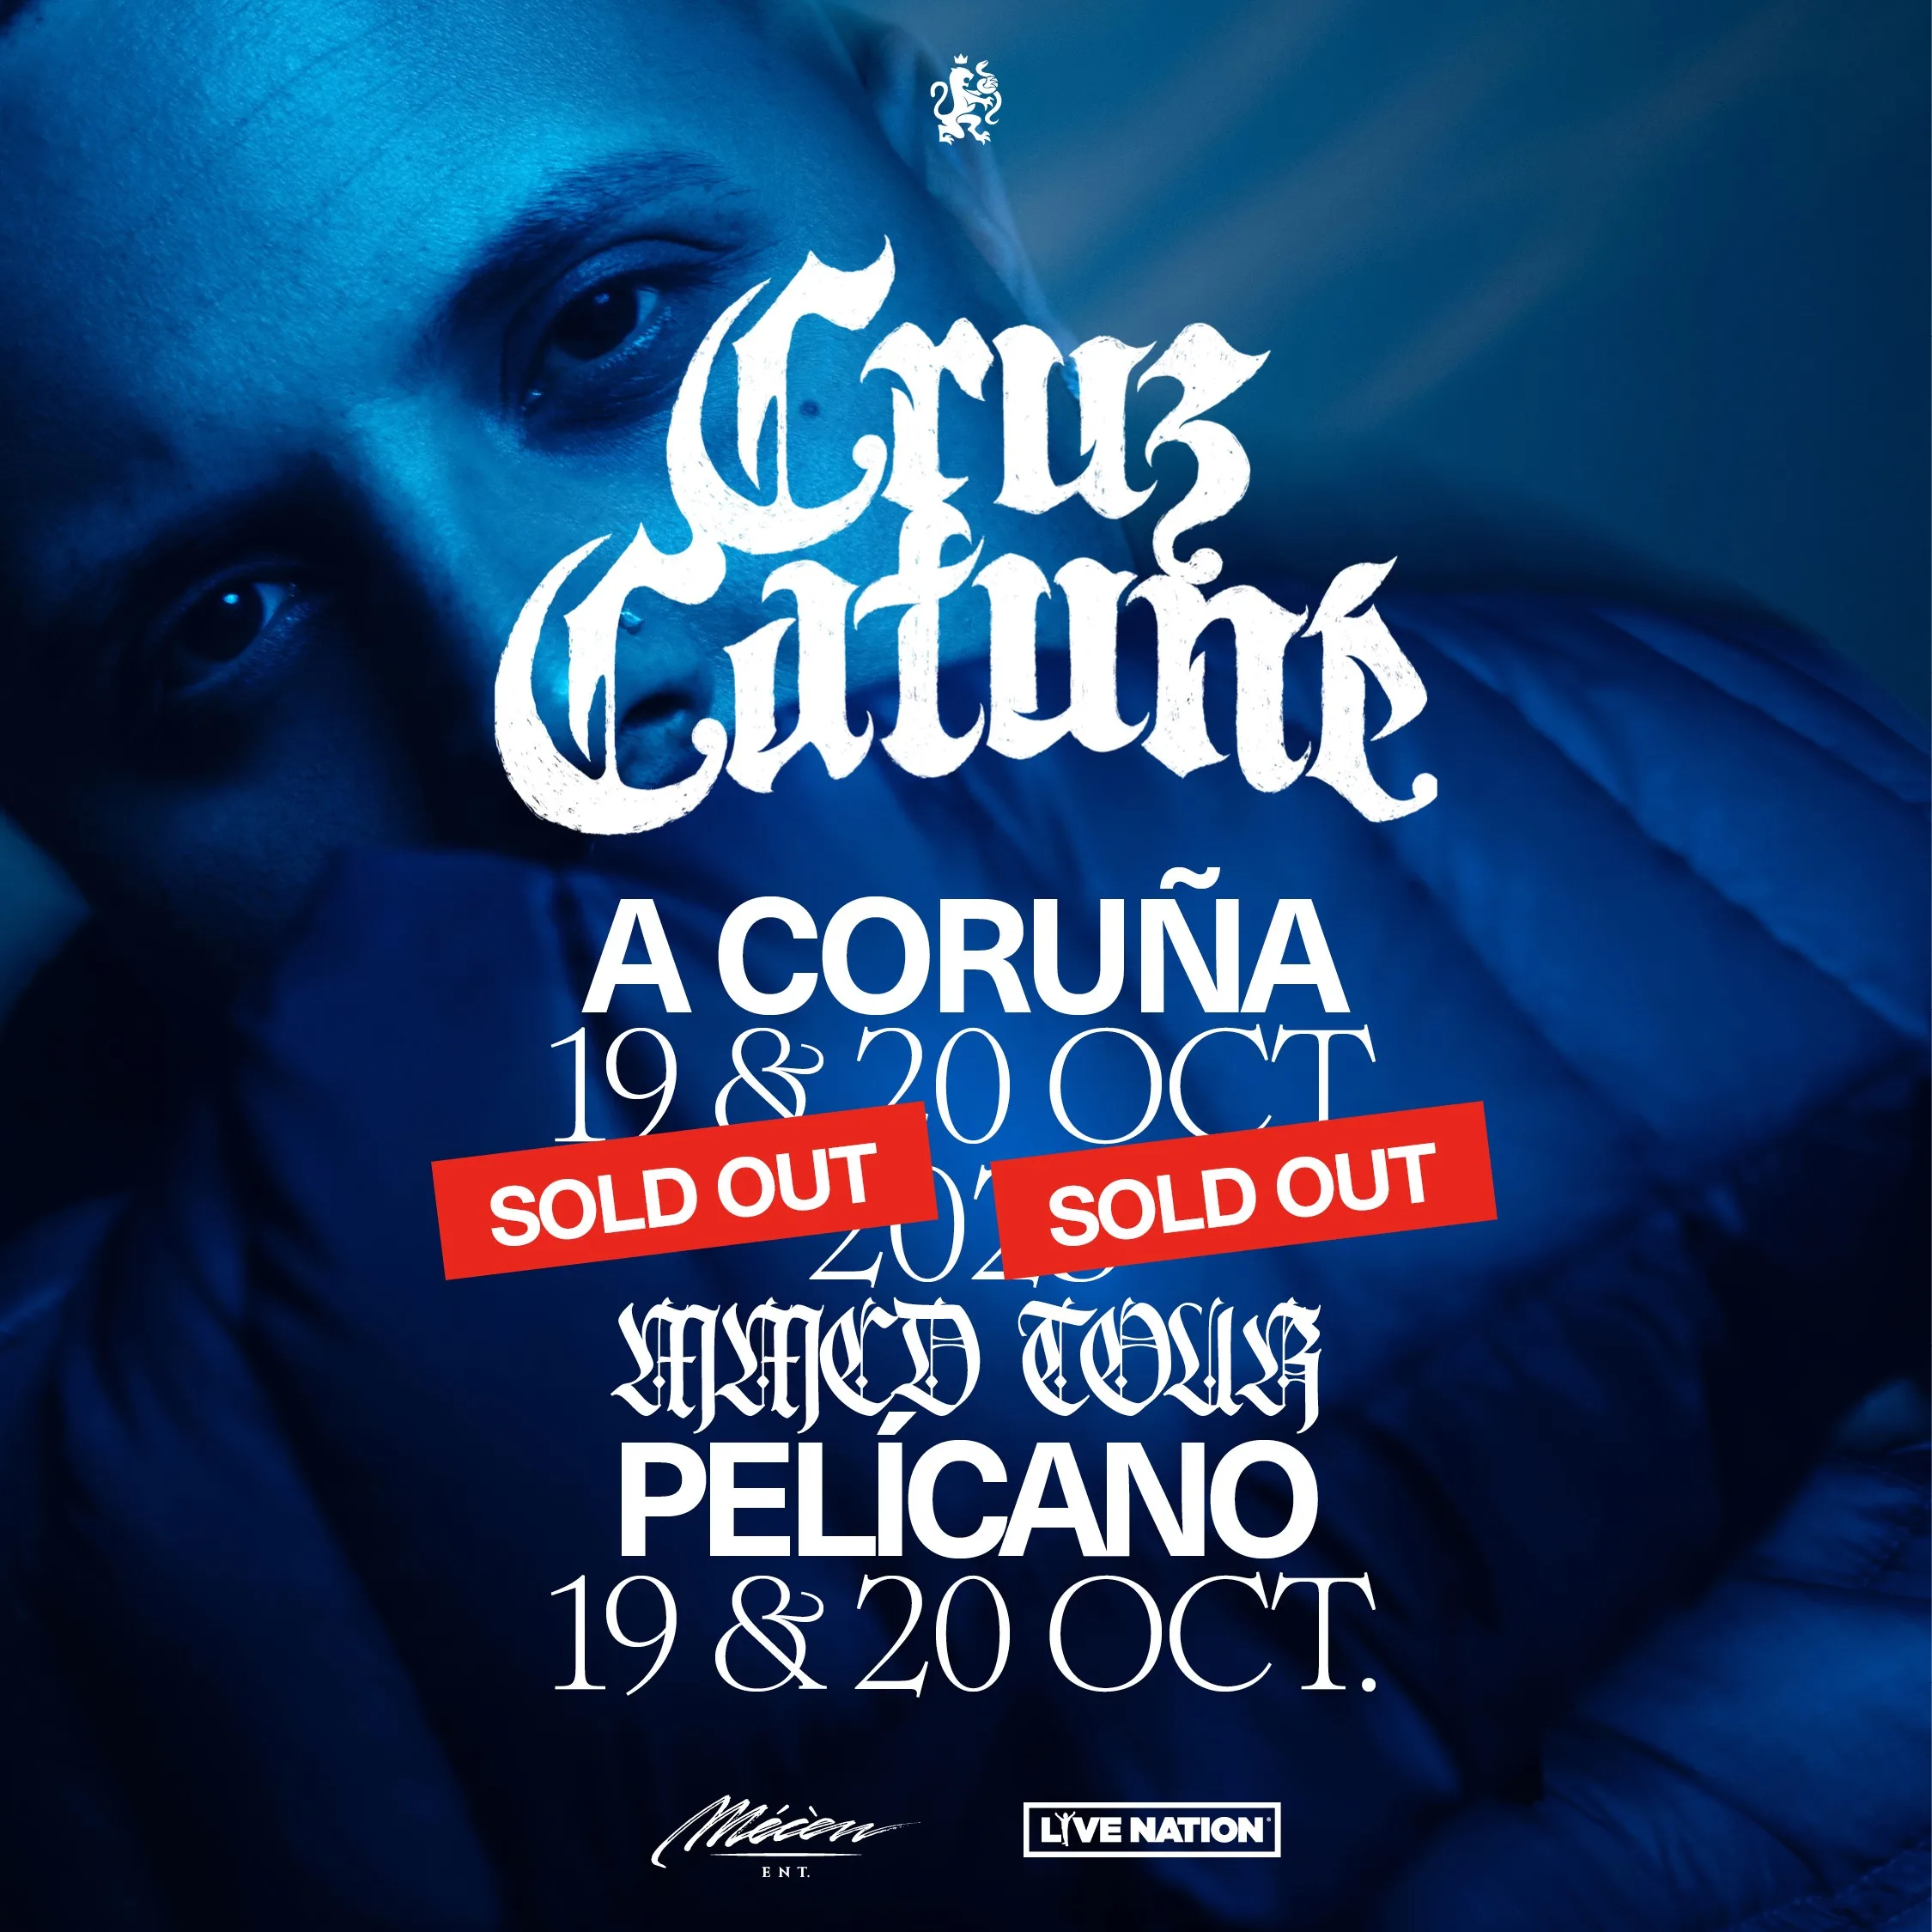 Sold Out de Cruz Cafuné en sus conciertos en A Coruña